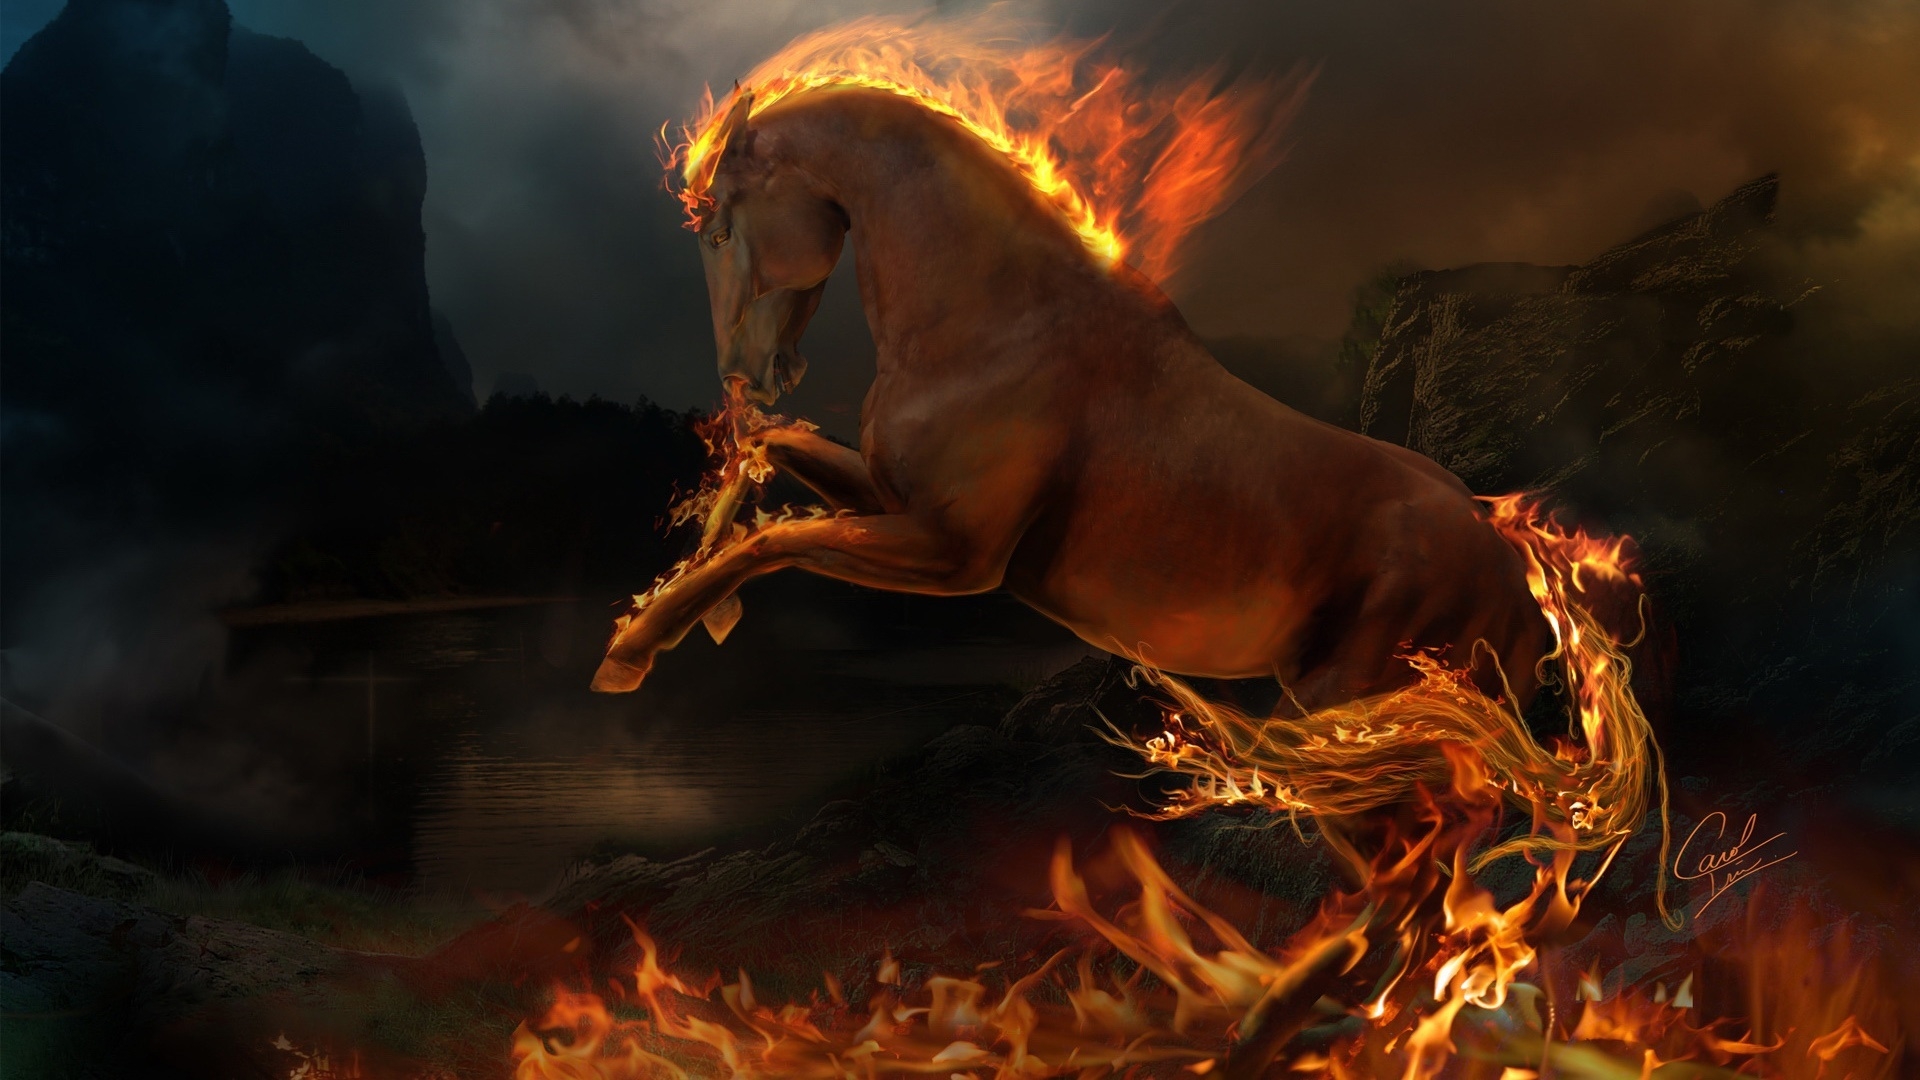 3D burning horse for 1920 x 1080 HDTV 1080p resolution